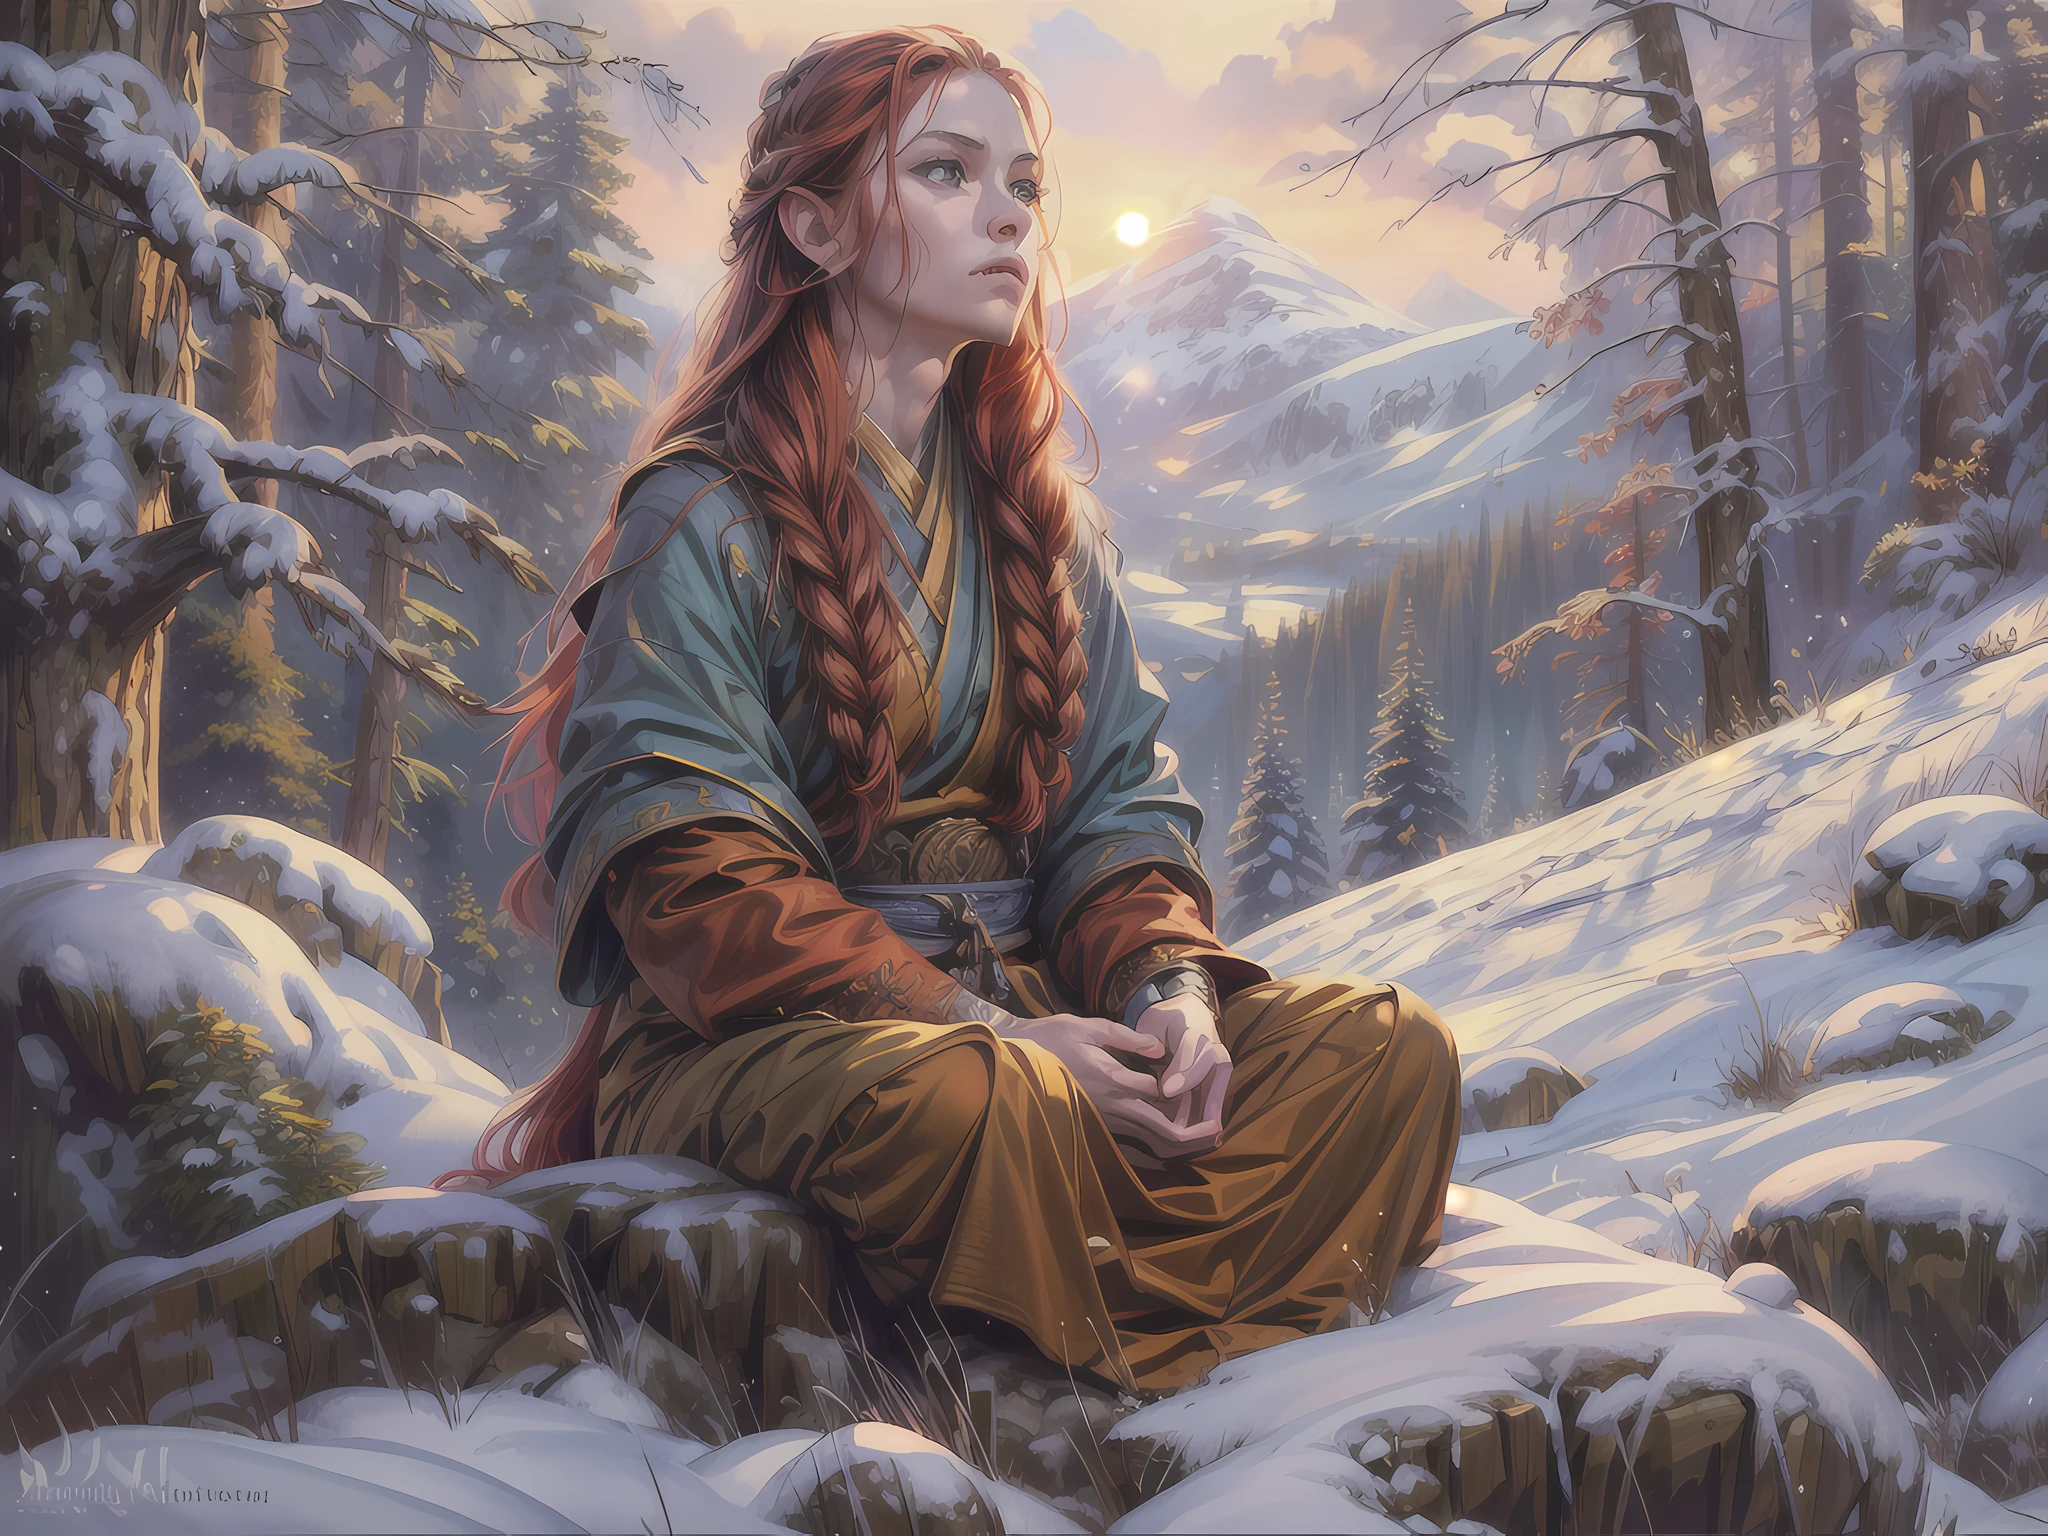 幻想艺术, 真实感, 德&德 art, 拉里·埃尔莫尔风格, magv1ll, 一位女僧人在雪山上盘腿打坐的图片, 雪山顶上，有一位穿着僧衣的人类女僧, 在篝火旁冥想 (最好的细节, 杰作, 最好的质量 :1.5) 在白雪皑皑的森林里 (最好的细节, 杰作, 最好的质量 :1.5), 红发, 长发, 全身 (最好的细节, 杰作, 最好的质量 :1.5), 极其详细 face (最好的细节, 杰作, 最好的质量 :1.5), 极度女性化 (最好的细节, 杰作, 最好的质量 :1.5), 精美美丽 (最好的细节, 杰作, 最好的质量 :1.5) 红发, 长发, 辫发, 皮肤苍白, 蓝眼睛, 专注的目光, 超最佳现实主义, 最好的细节, 最好的质量, 16千, [极其详细], 杰作, 最好的质量, (极其详细), 超广角拍摄, 照相写实主义, 景深, 超现实主义绘画, 3德 rendering